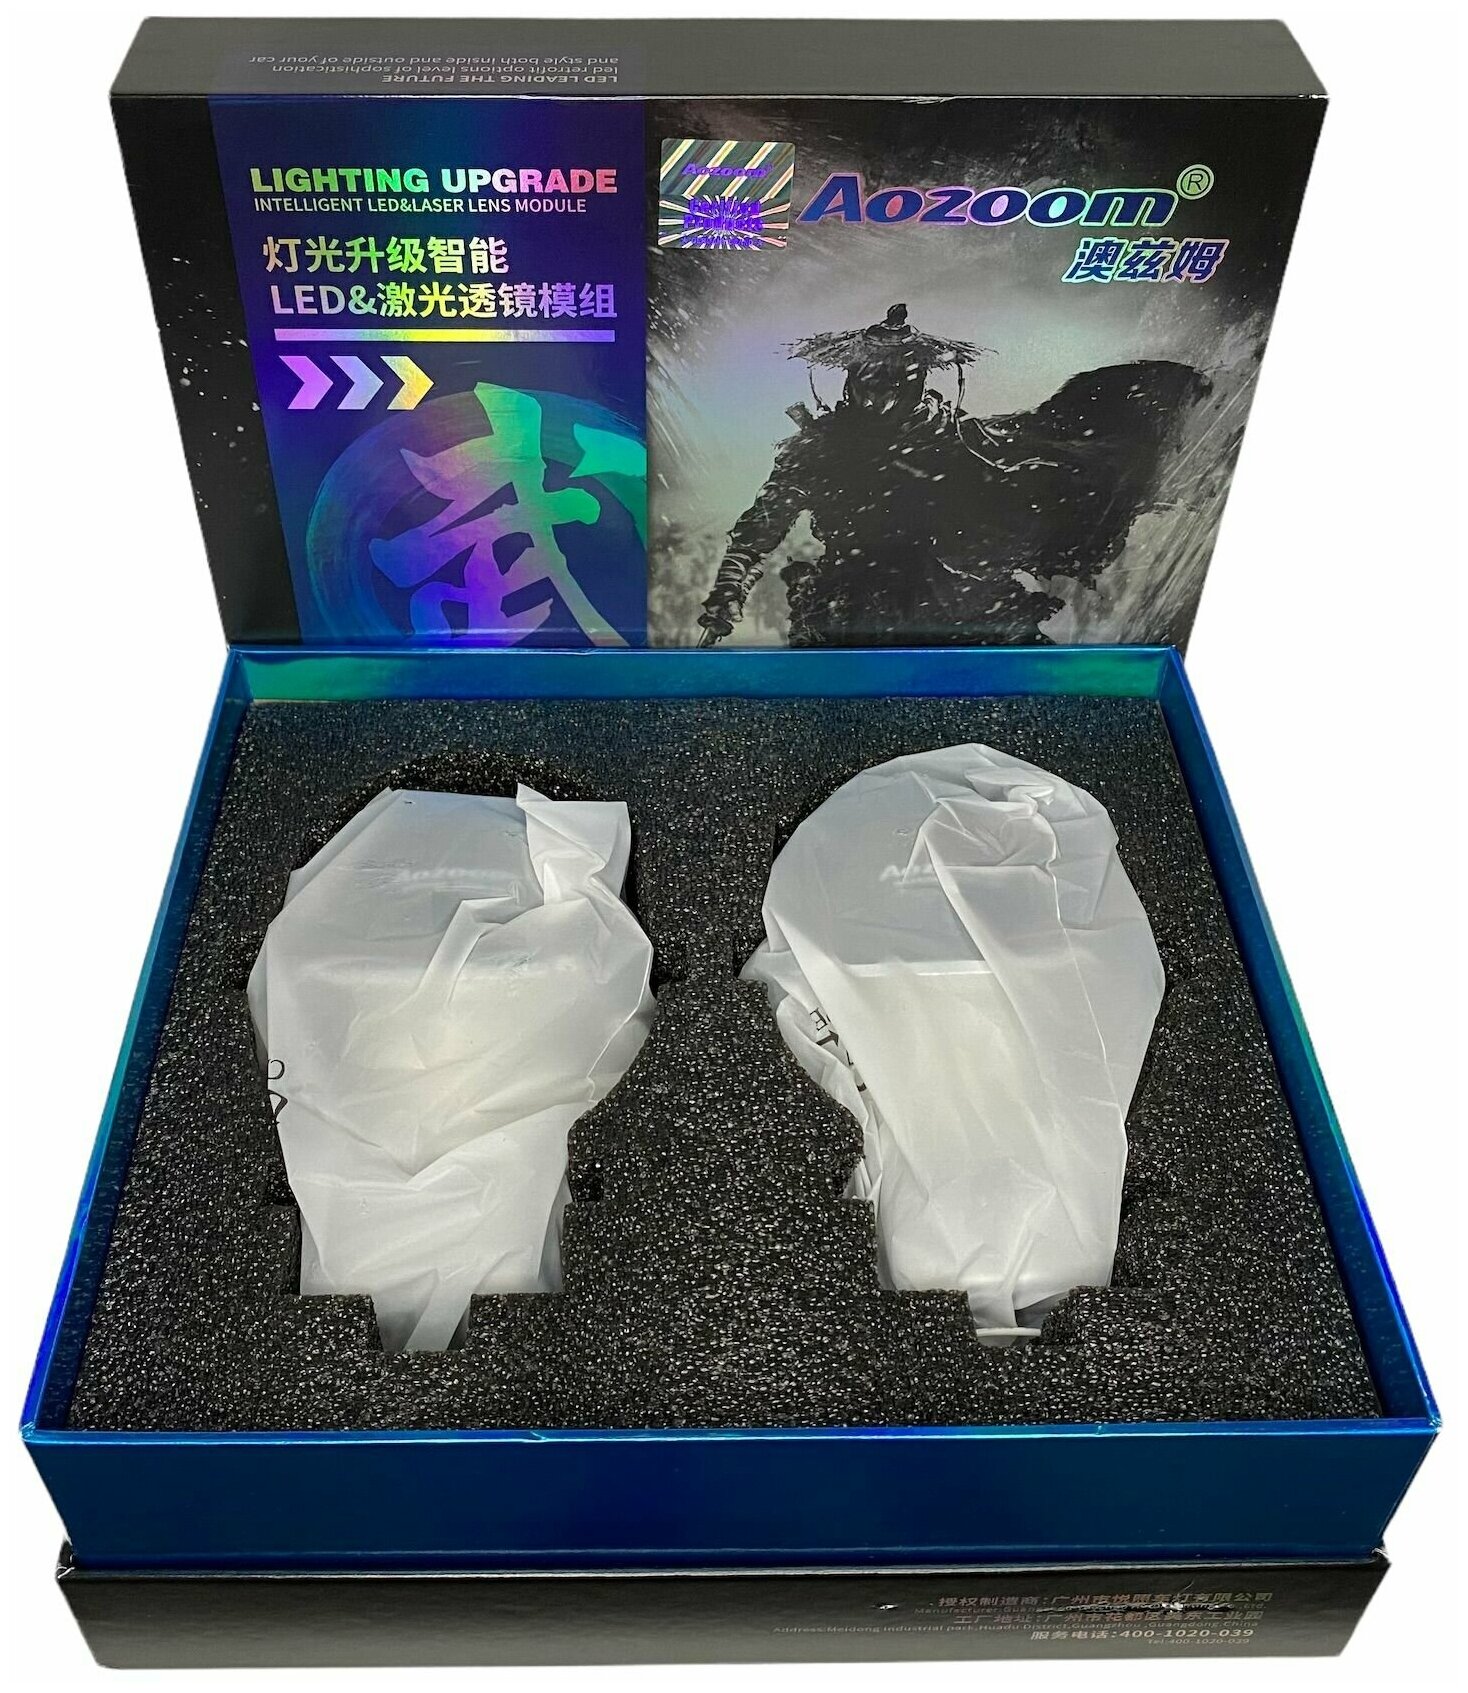 Светодиодные би линзы Bi-LED AOZOOM Black Warrior 30 5600K NEW 2022